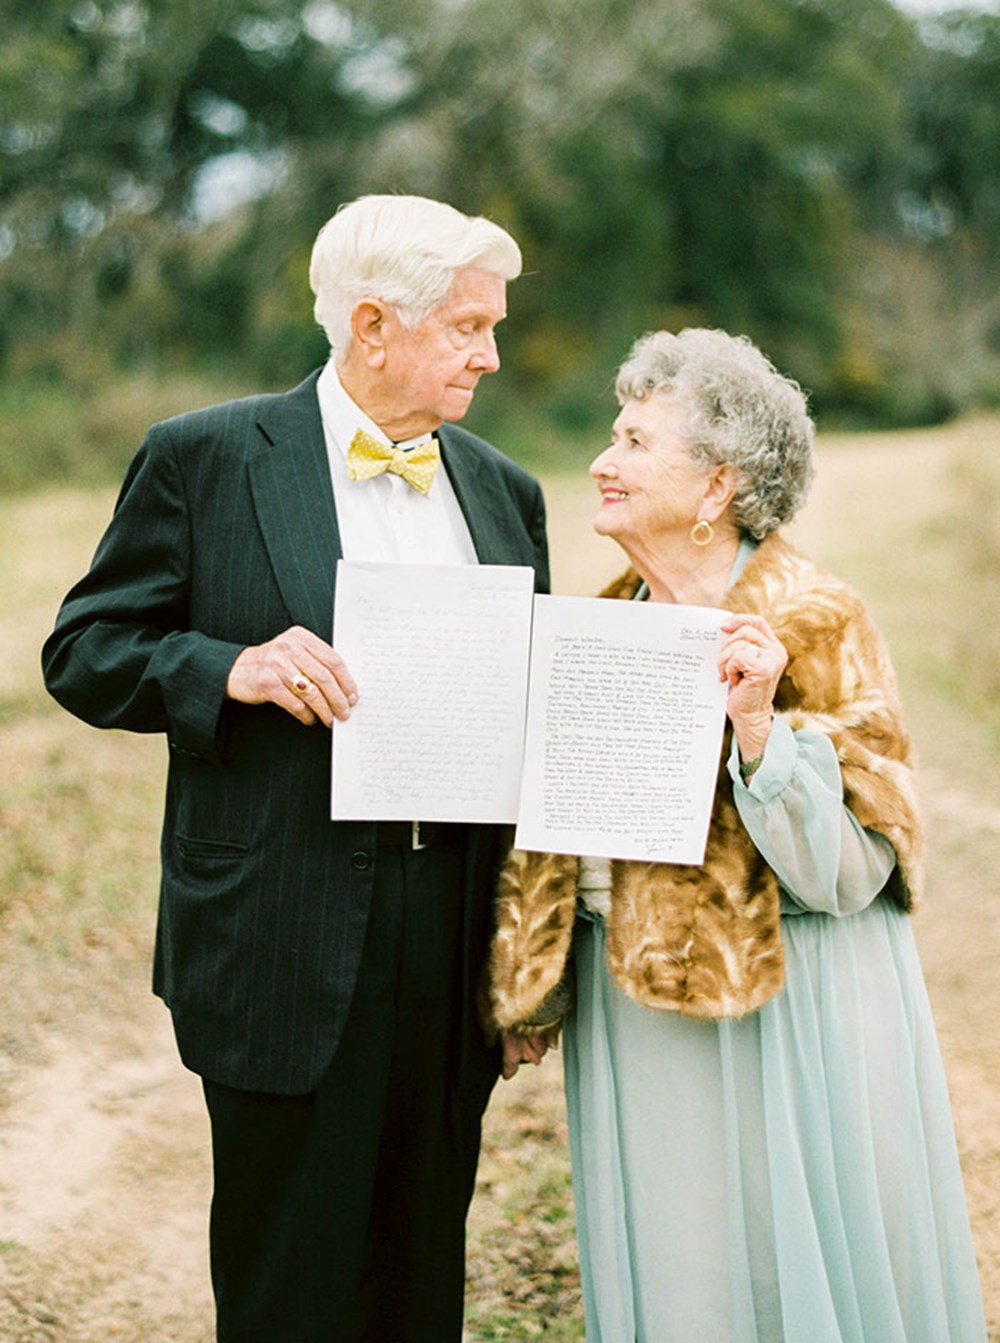 Бывшая жена старика. Свадьба людей в возрасте. Золотой юбилей свадьбы. Свадьба бабушки и дедушки. Брак пожилых.